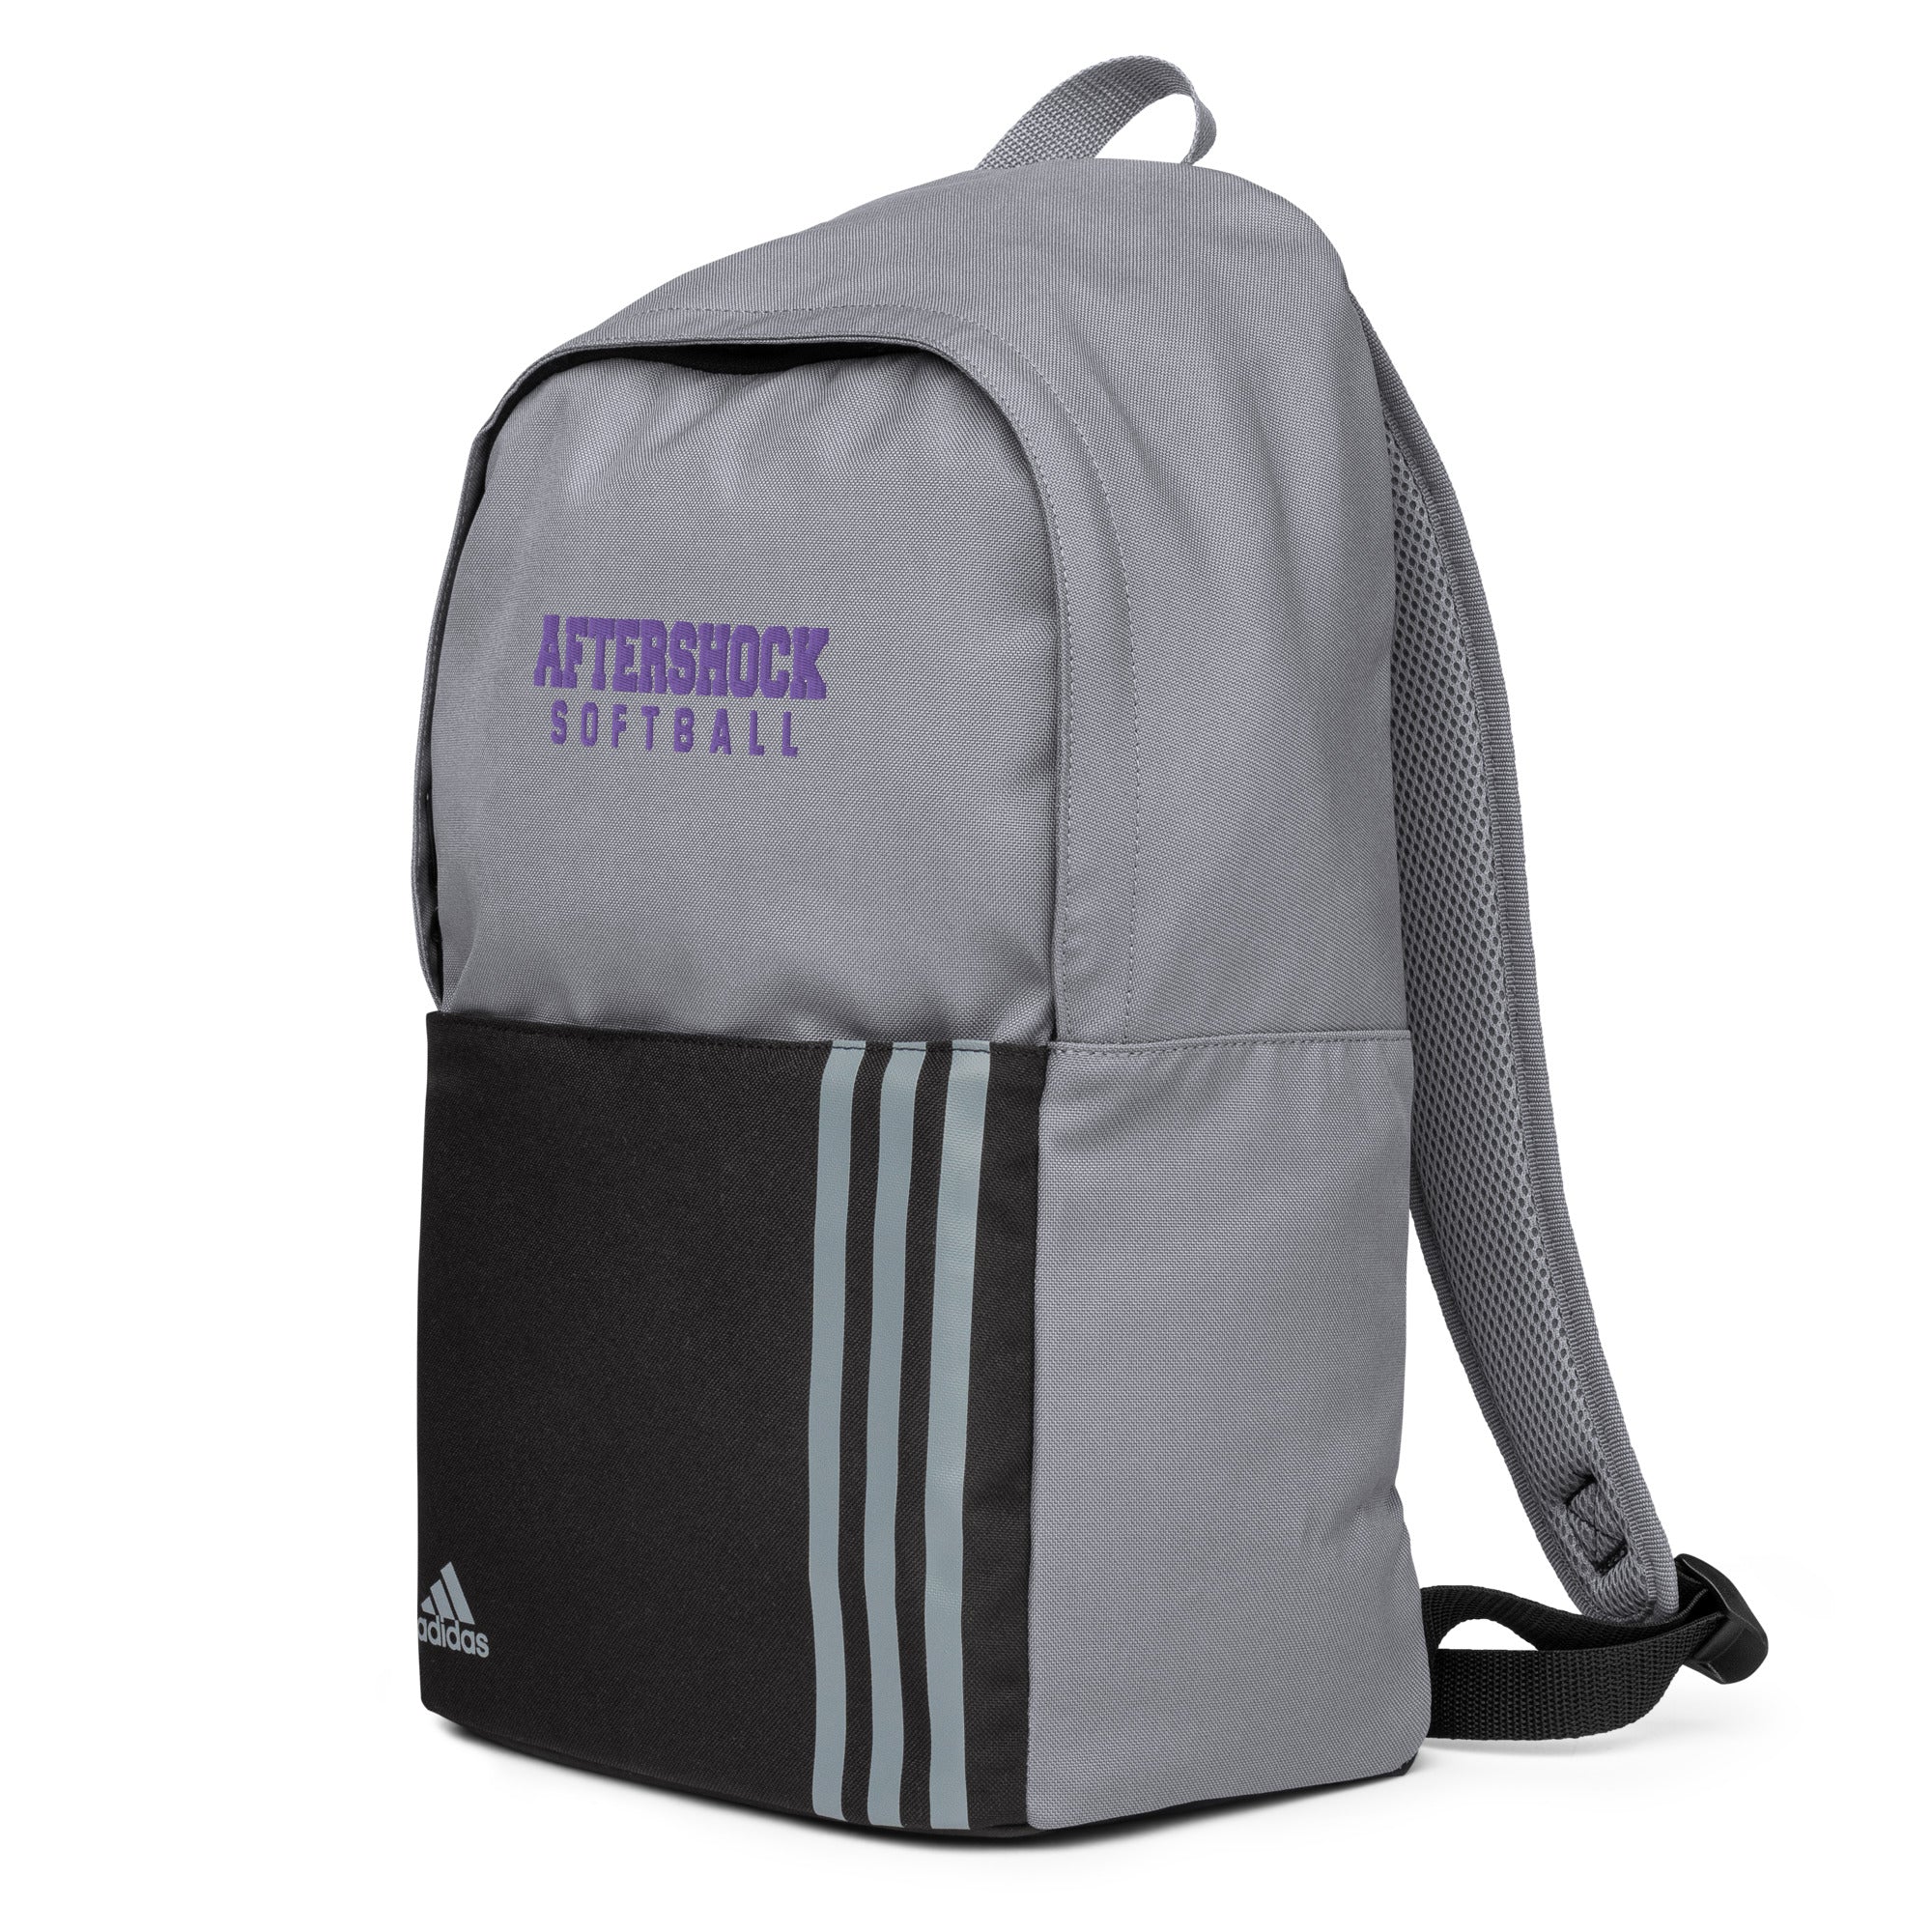 Aftershock Adidas backpack